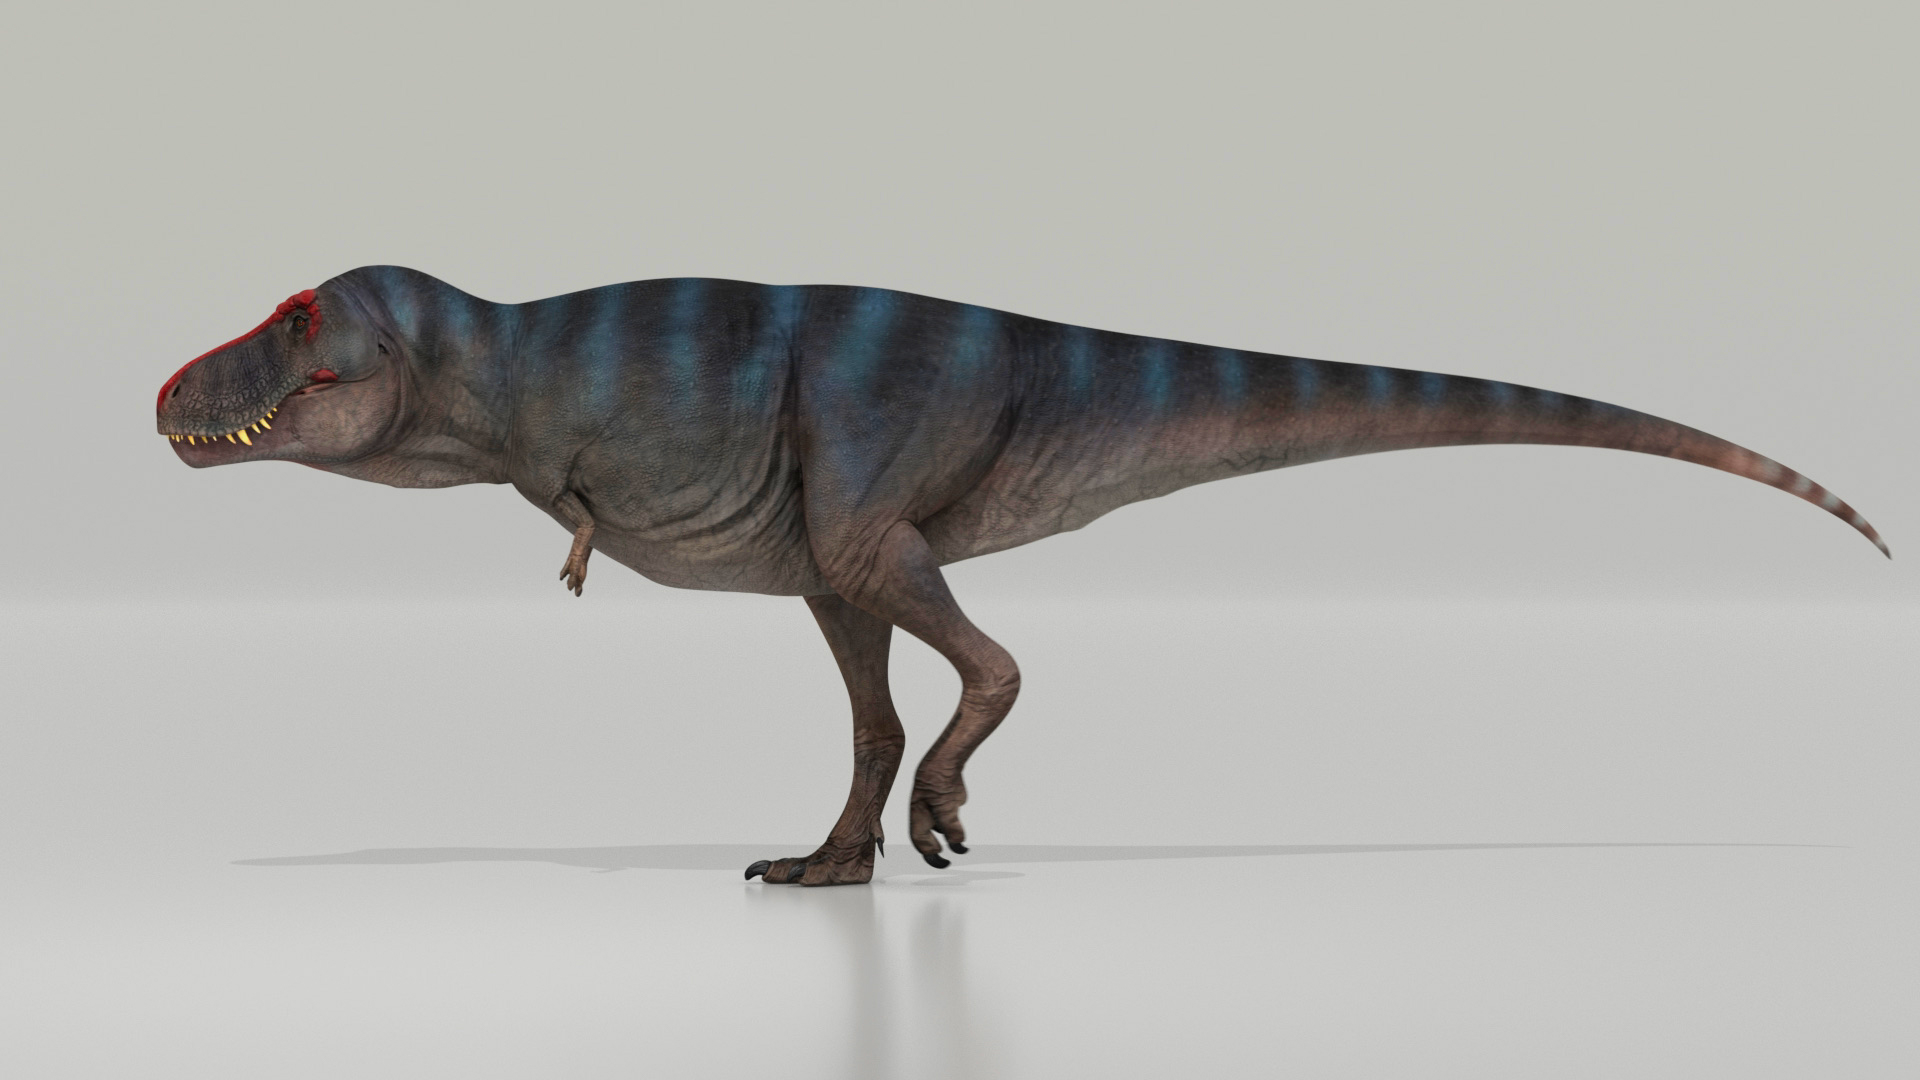 El &#39;Tiranosaurio rex&#39; caminaba a una velocidad de 4,6 kilómetros por hora,  como los humanos | Ciencia | EL PAÍS